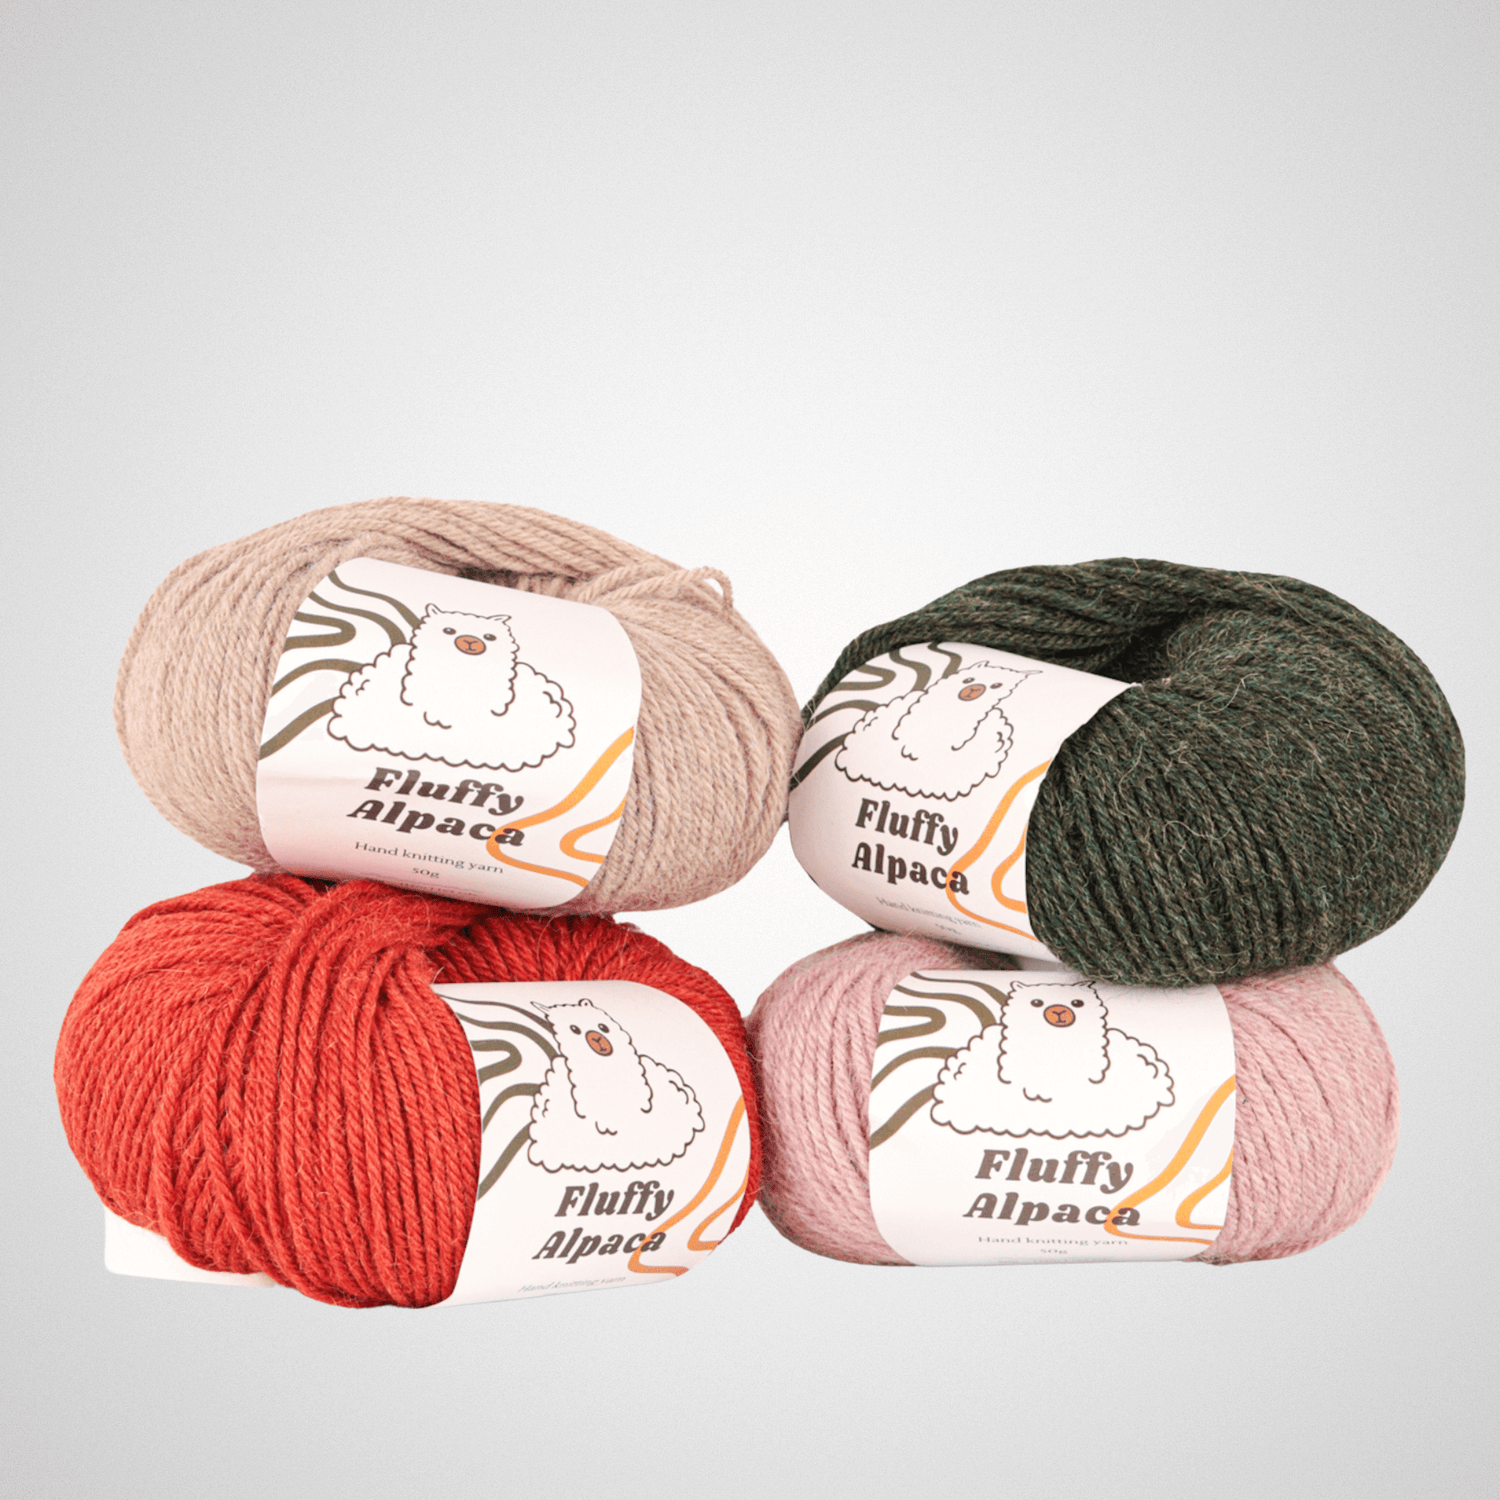 Fluffy Alpaca - Knitting thread - 100% alpaca wool - Country gray